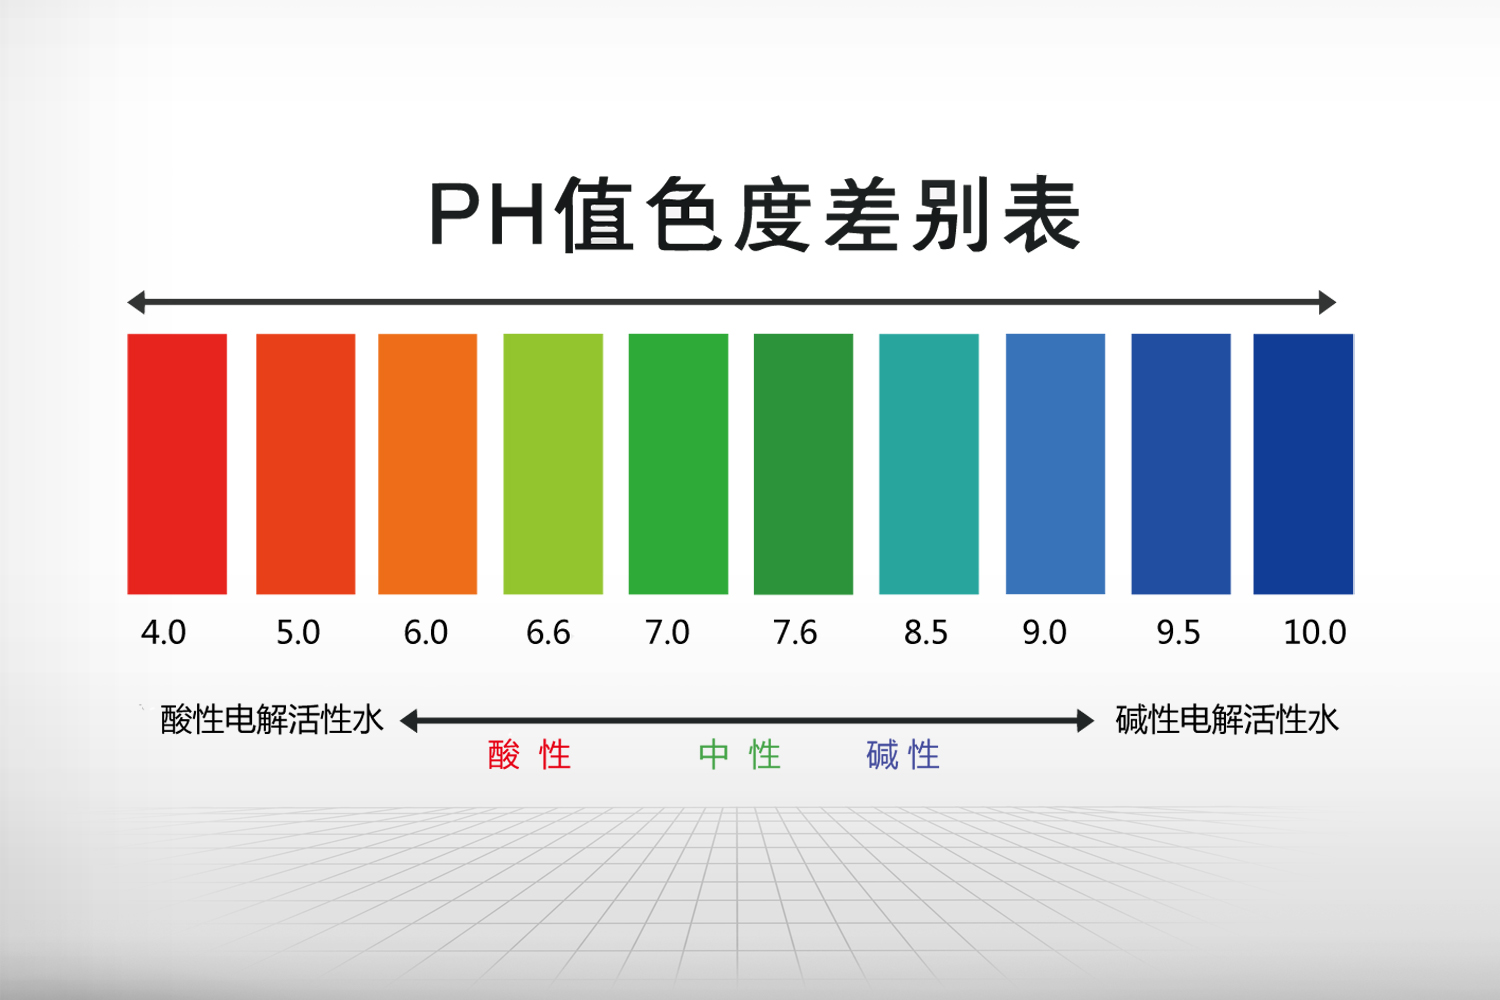 酸碱度ph值对照表图片